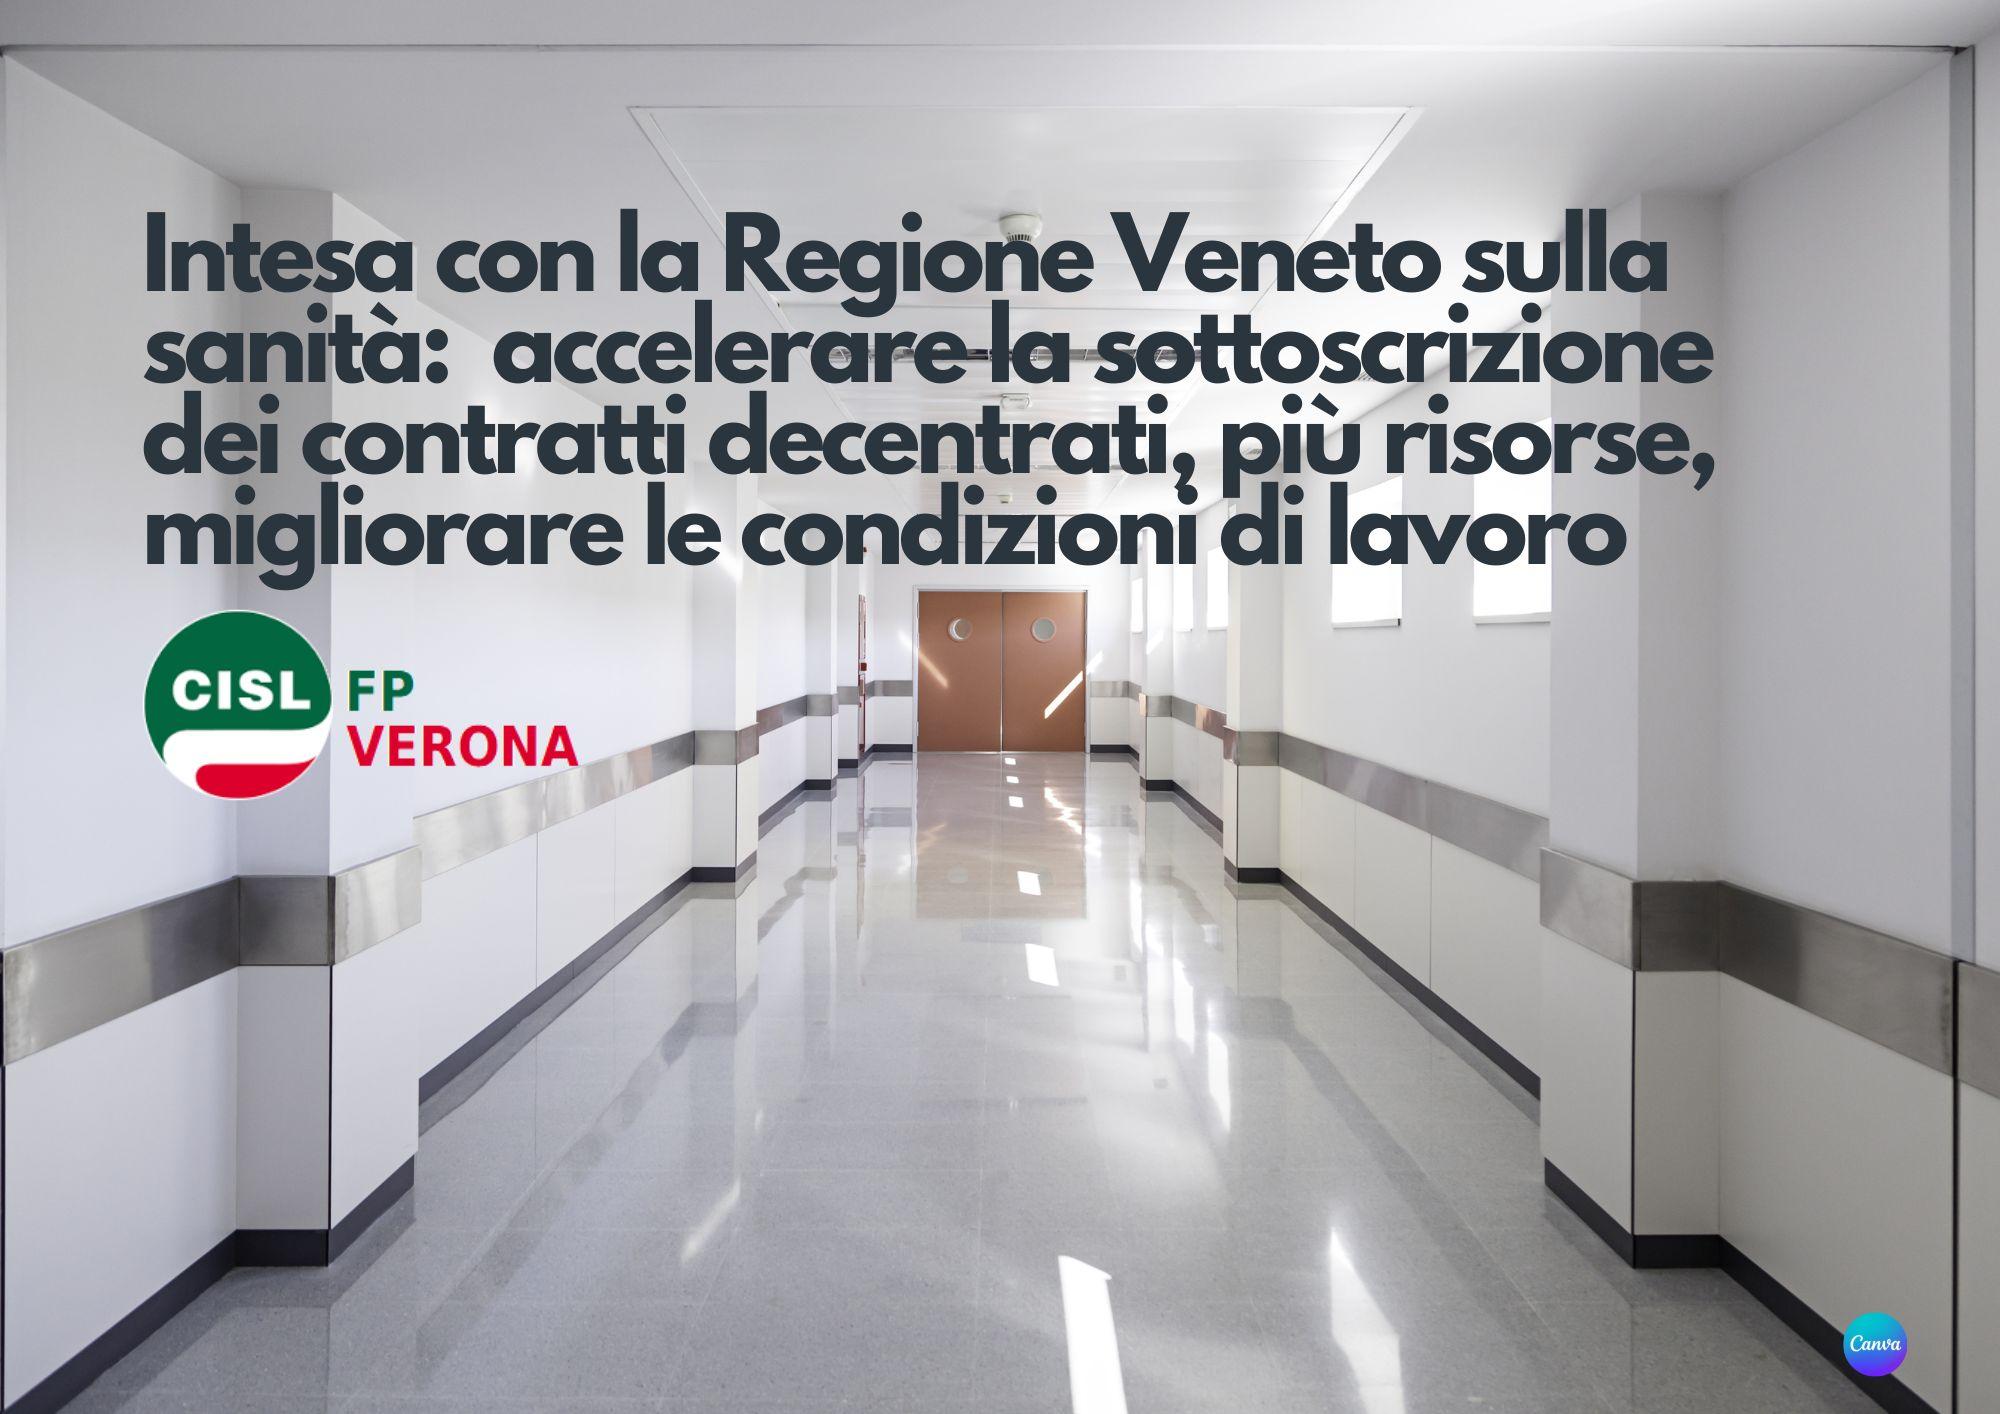 Cisl FP Verona. Sanità pubblica. Accordo con Regione Veneto: accelerare contrattazione decentrata e risorse